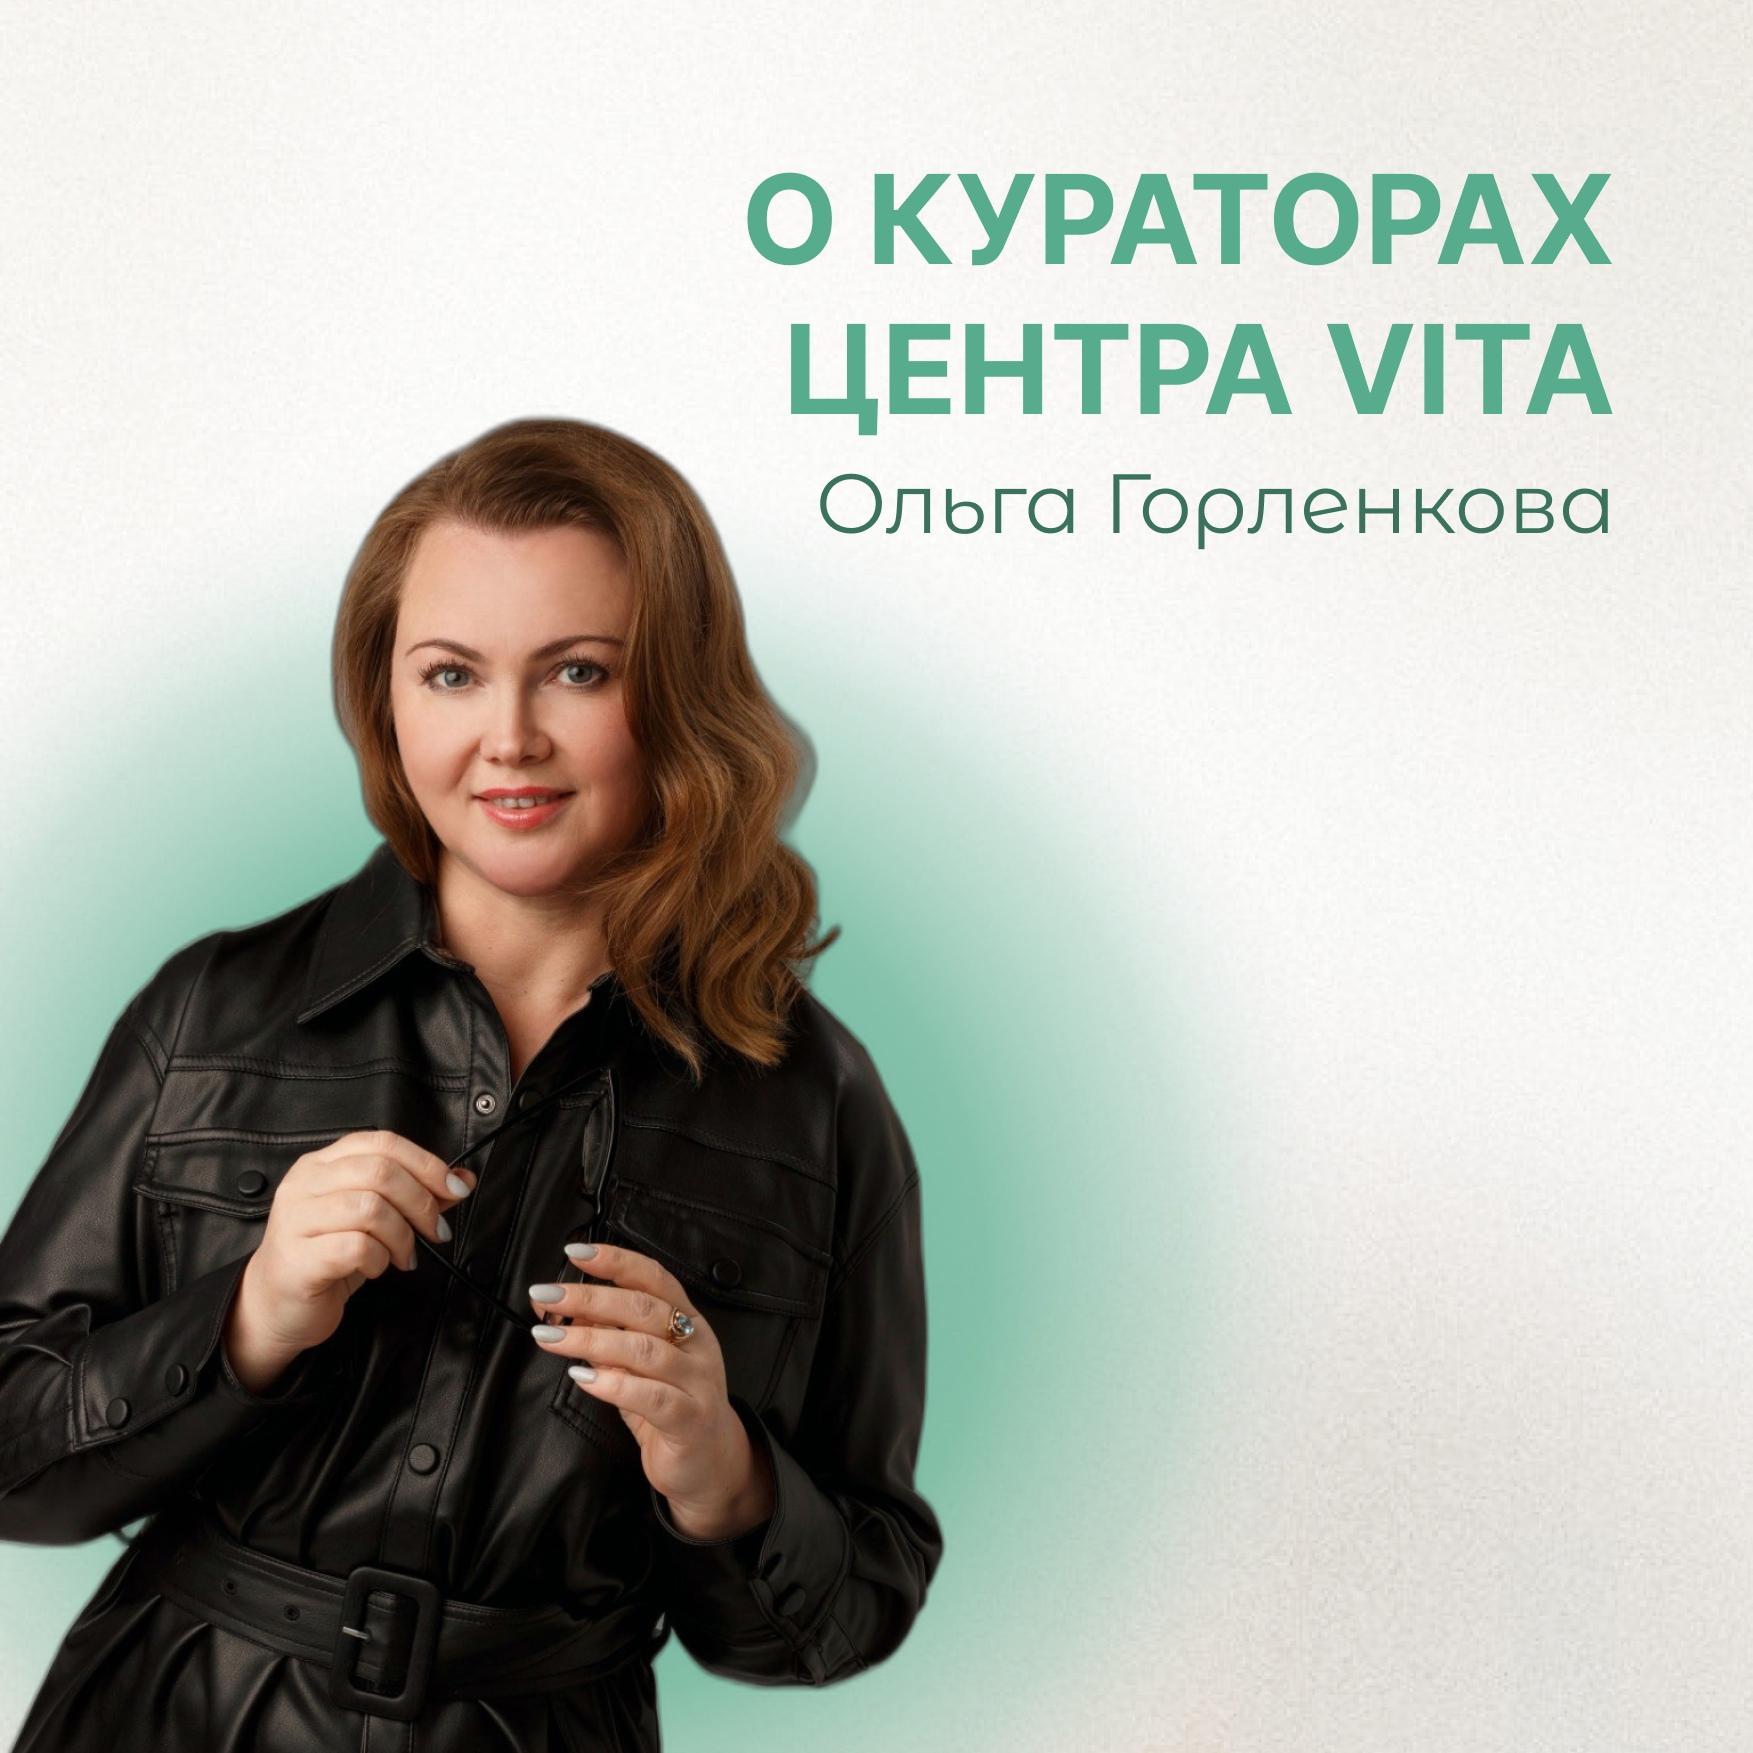 Ольга Горленкова - наш высококвалифицированный сотрудник